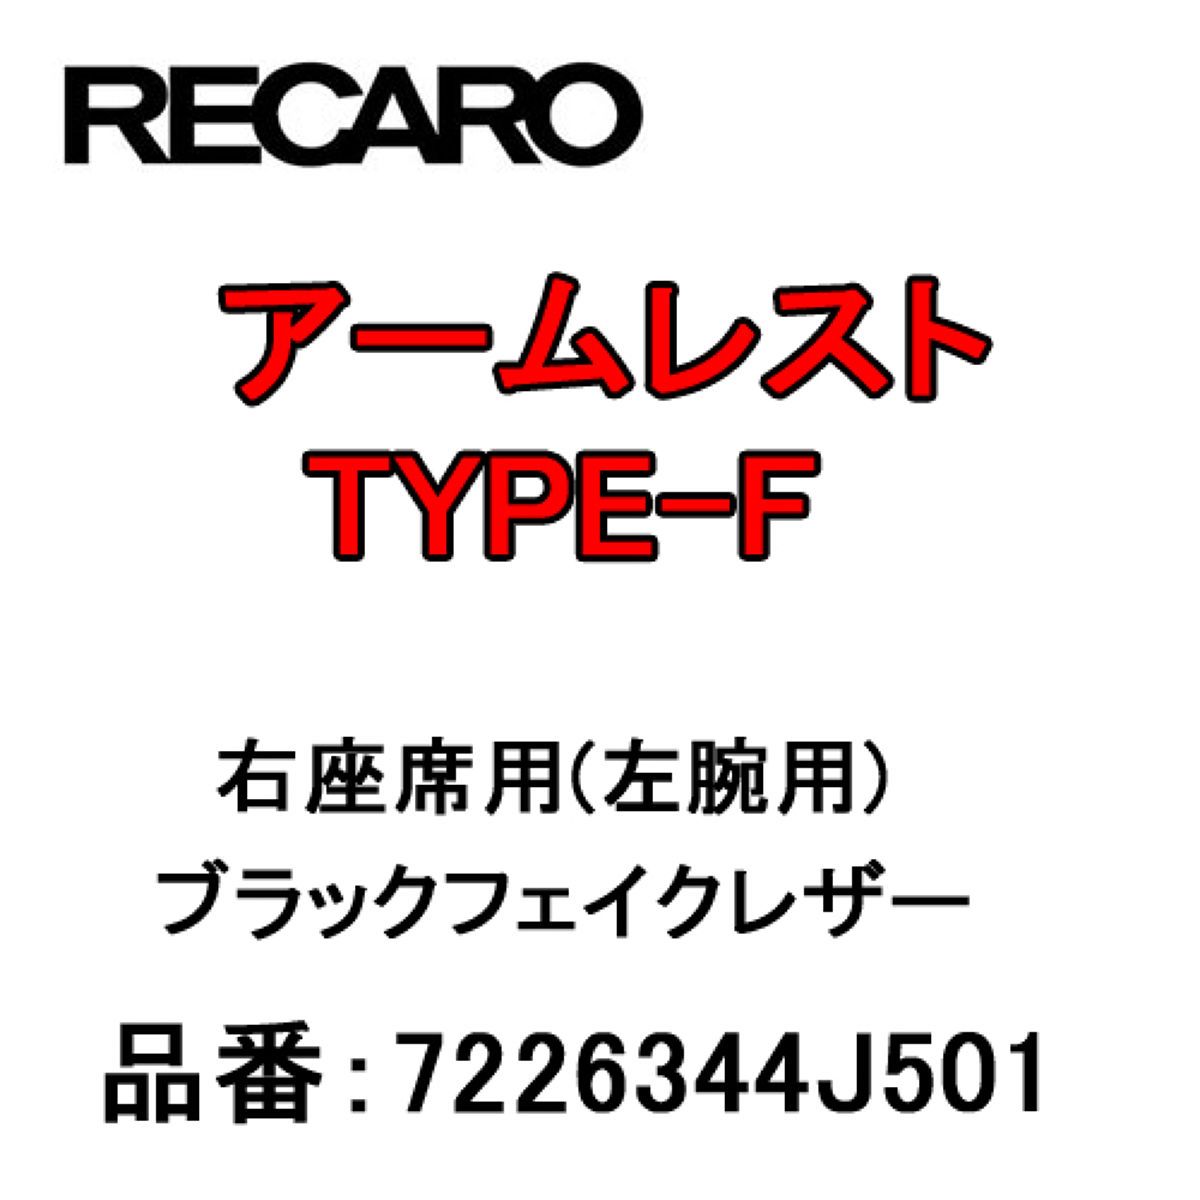 RECARO レカロ アームレスト TYPE-F ブラックフェイクレザー 右座席(左腕用) 7226344J501 1